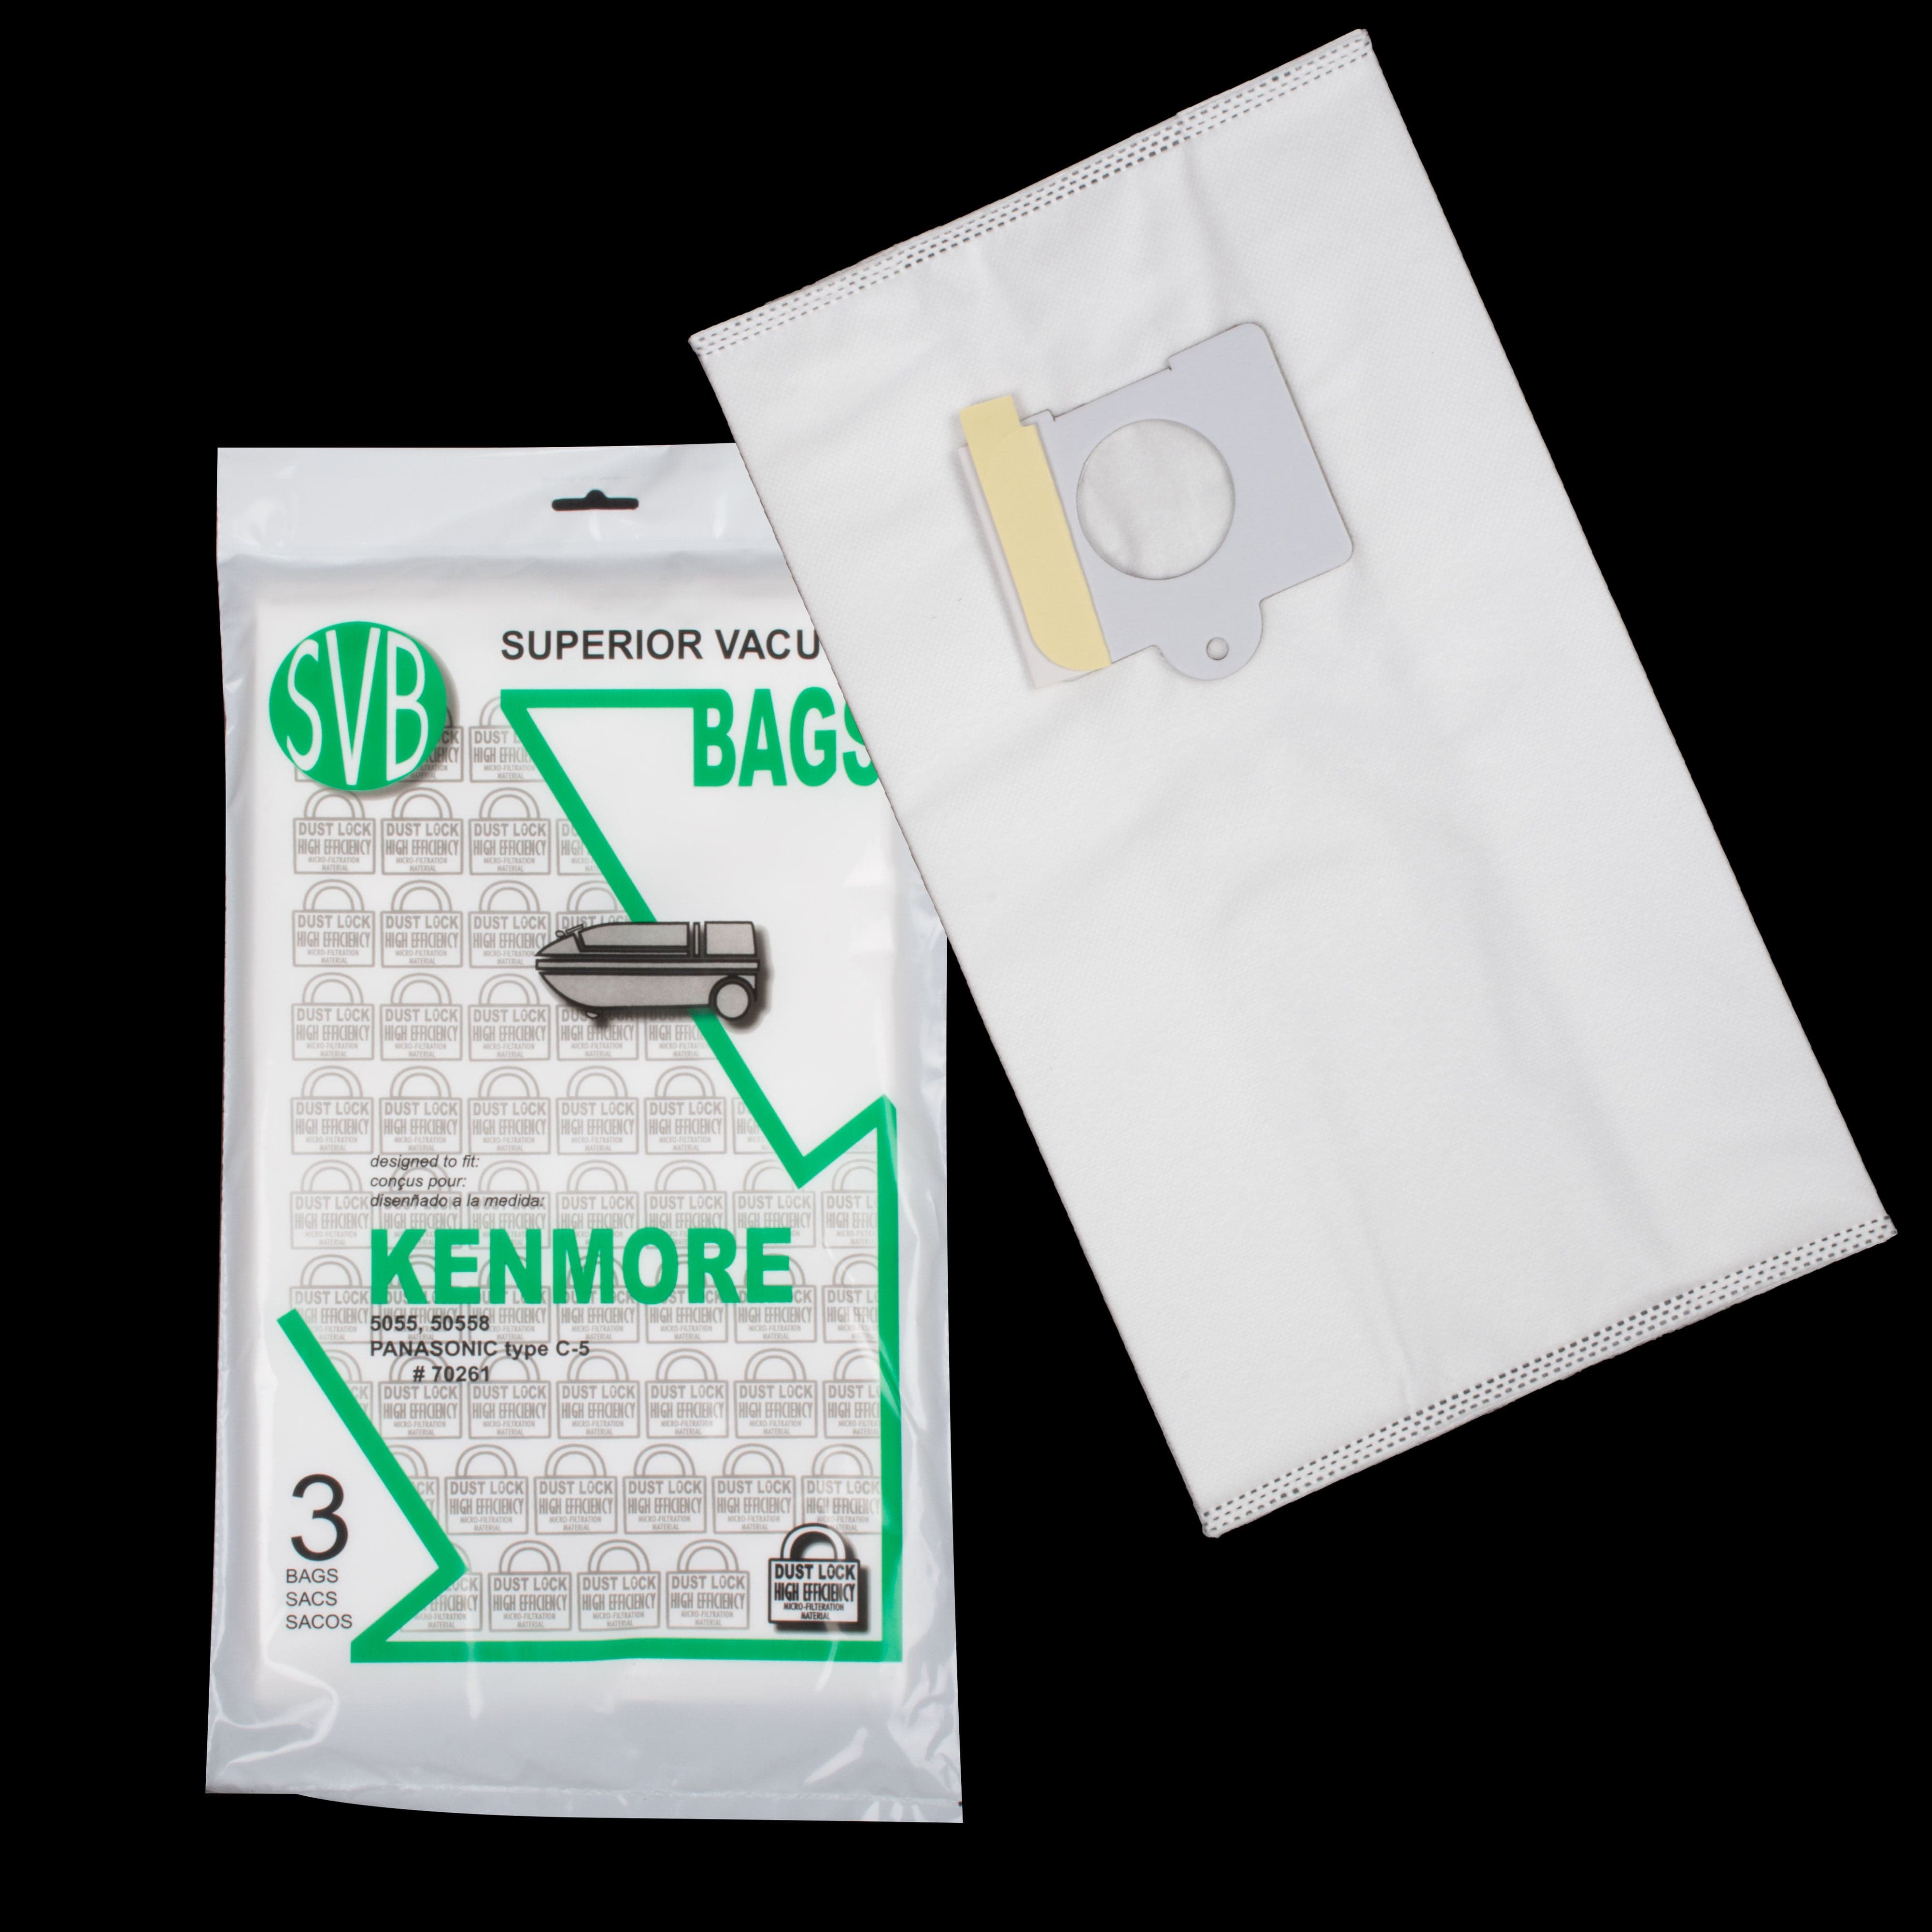 Kenmore & Panasonic Vacuum Hepa Bags 3 per package Dust lock Best Quality